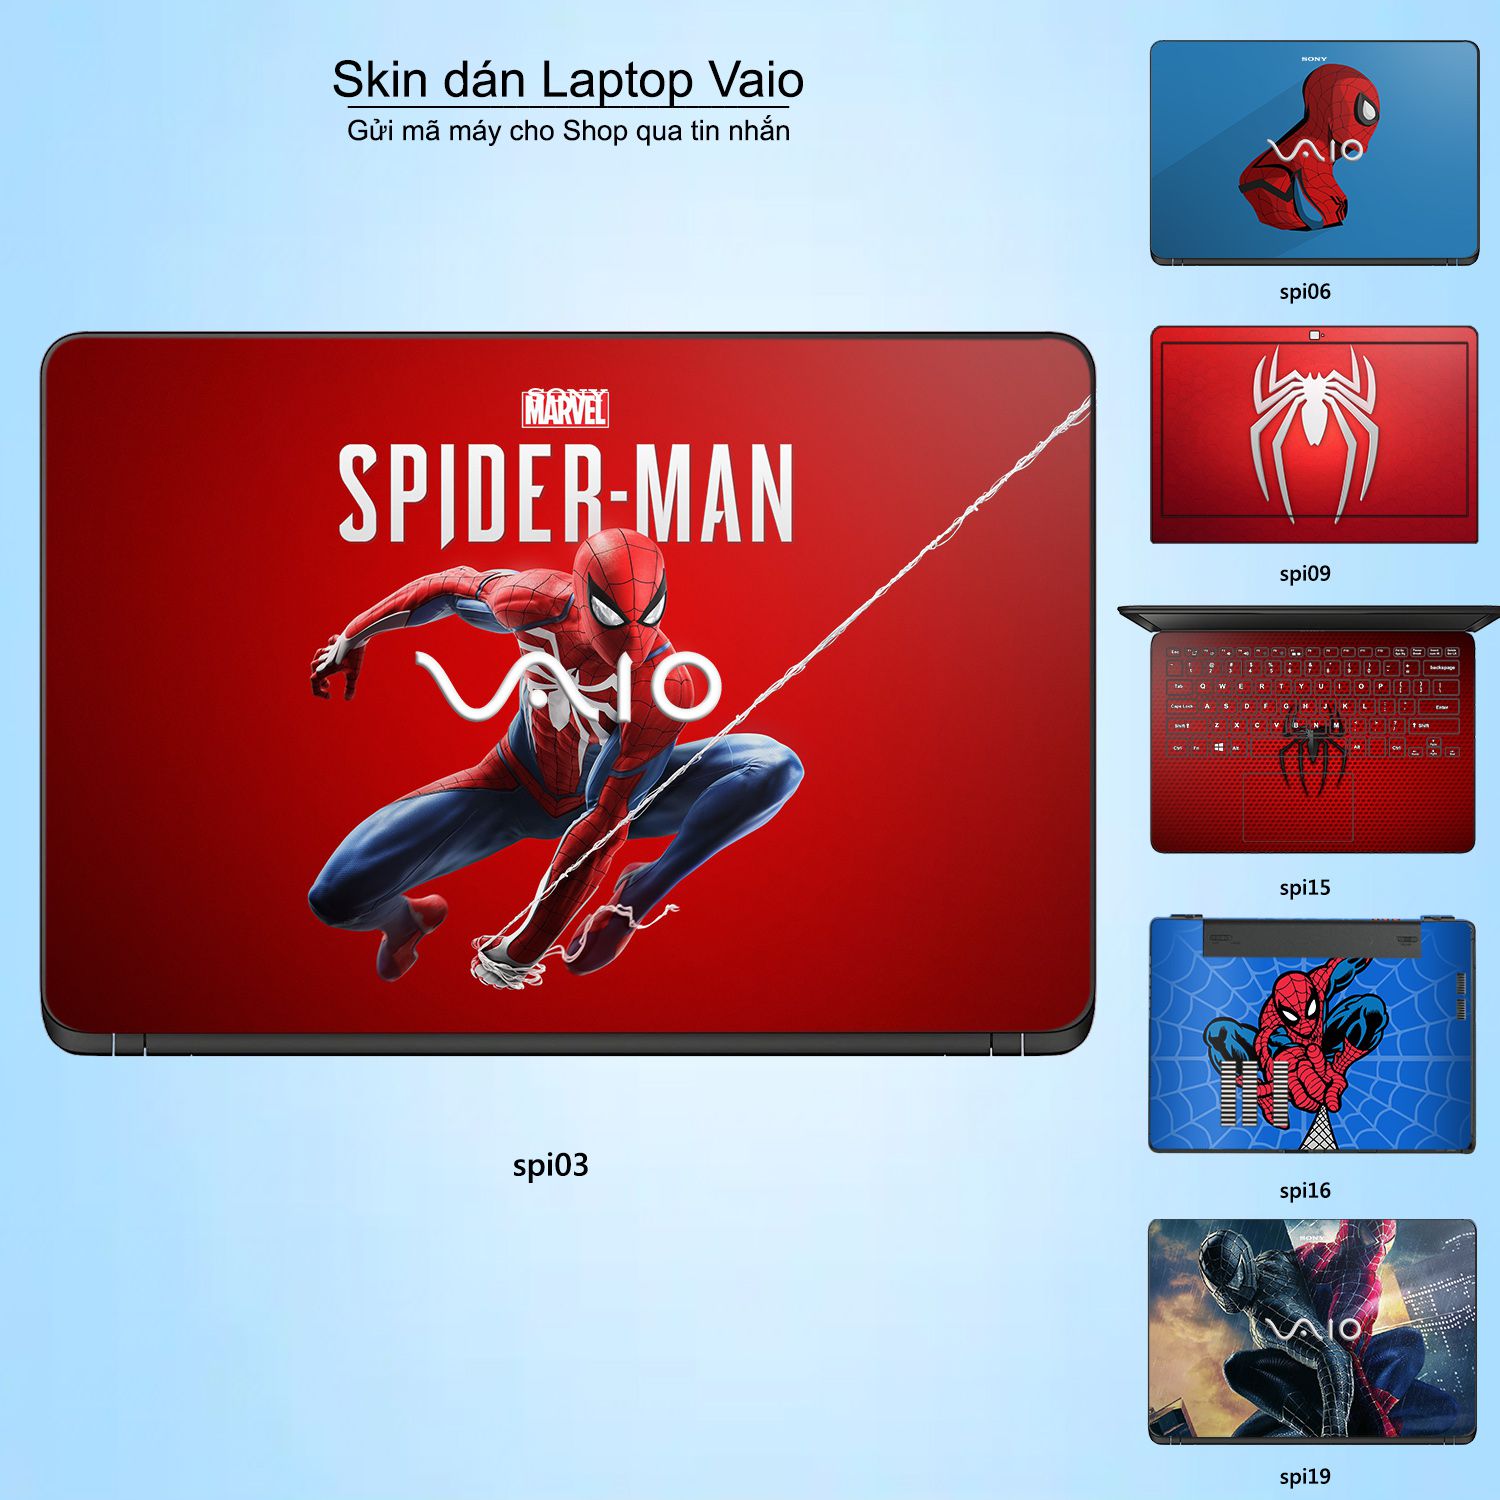 Decal Skin dán Laptop VAIO mẫu người nhện Spiderman (inbox mã máy cho shop)  